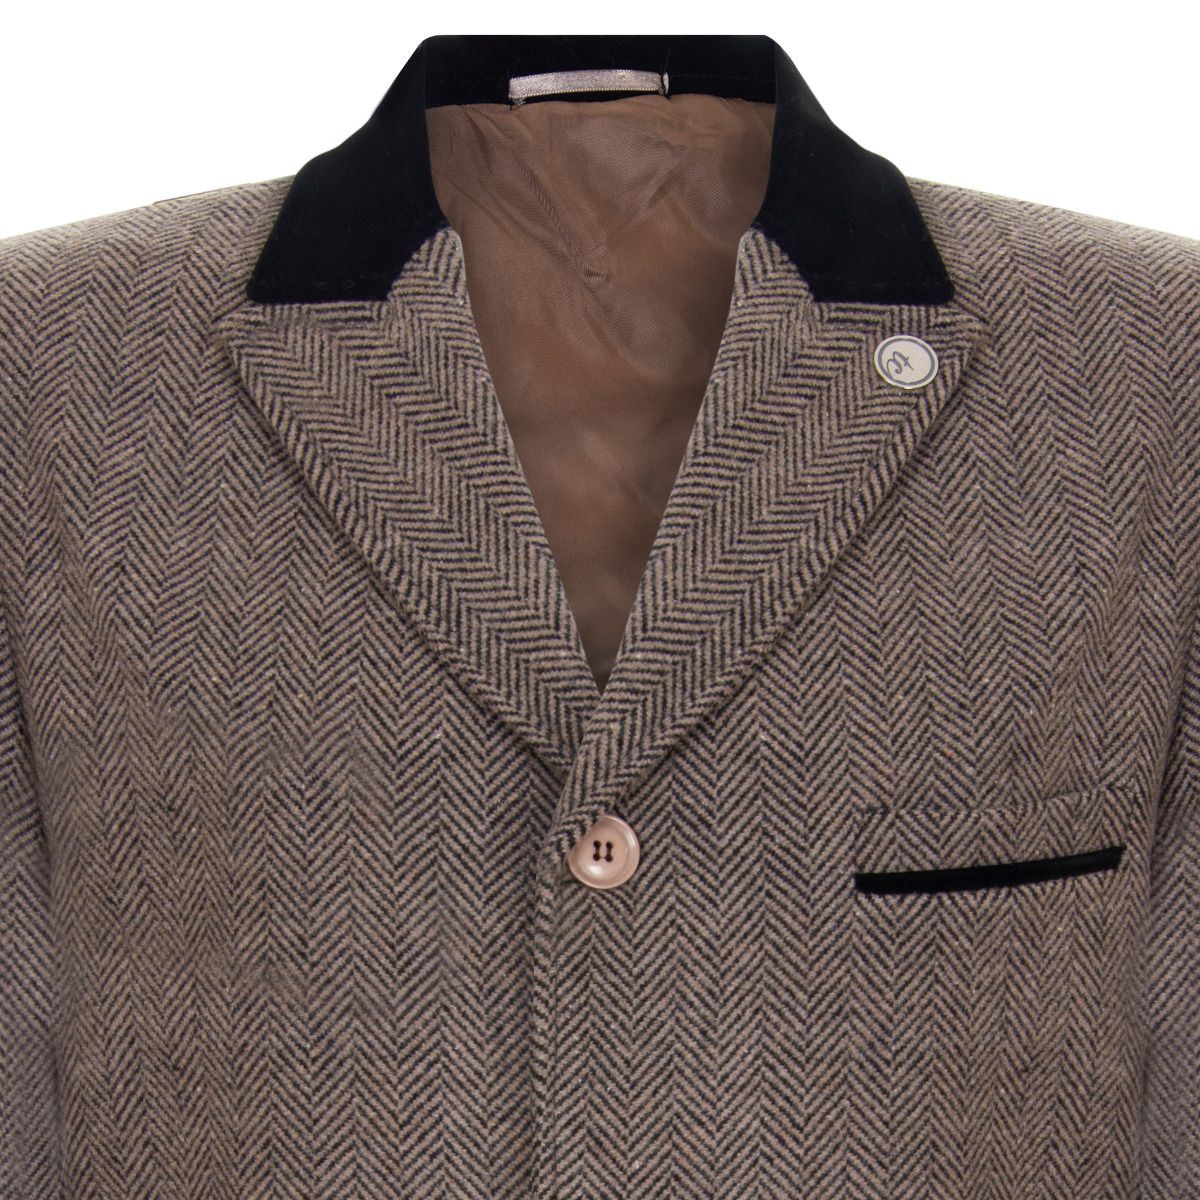 Mens 3/4 Brown Long Crombie Overcoat Jacket Herringbone Tweed Coat Peaky Blinder - Upperclass Fashions 